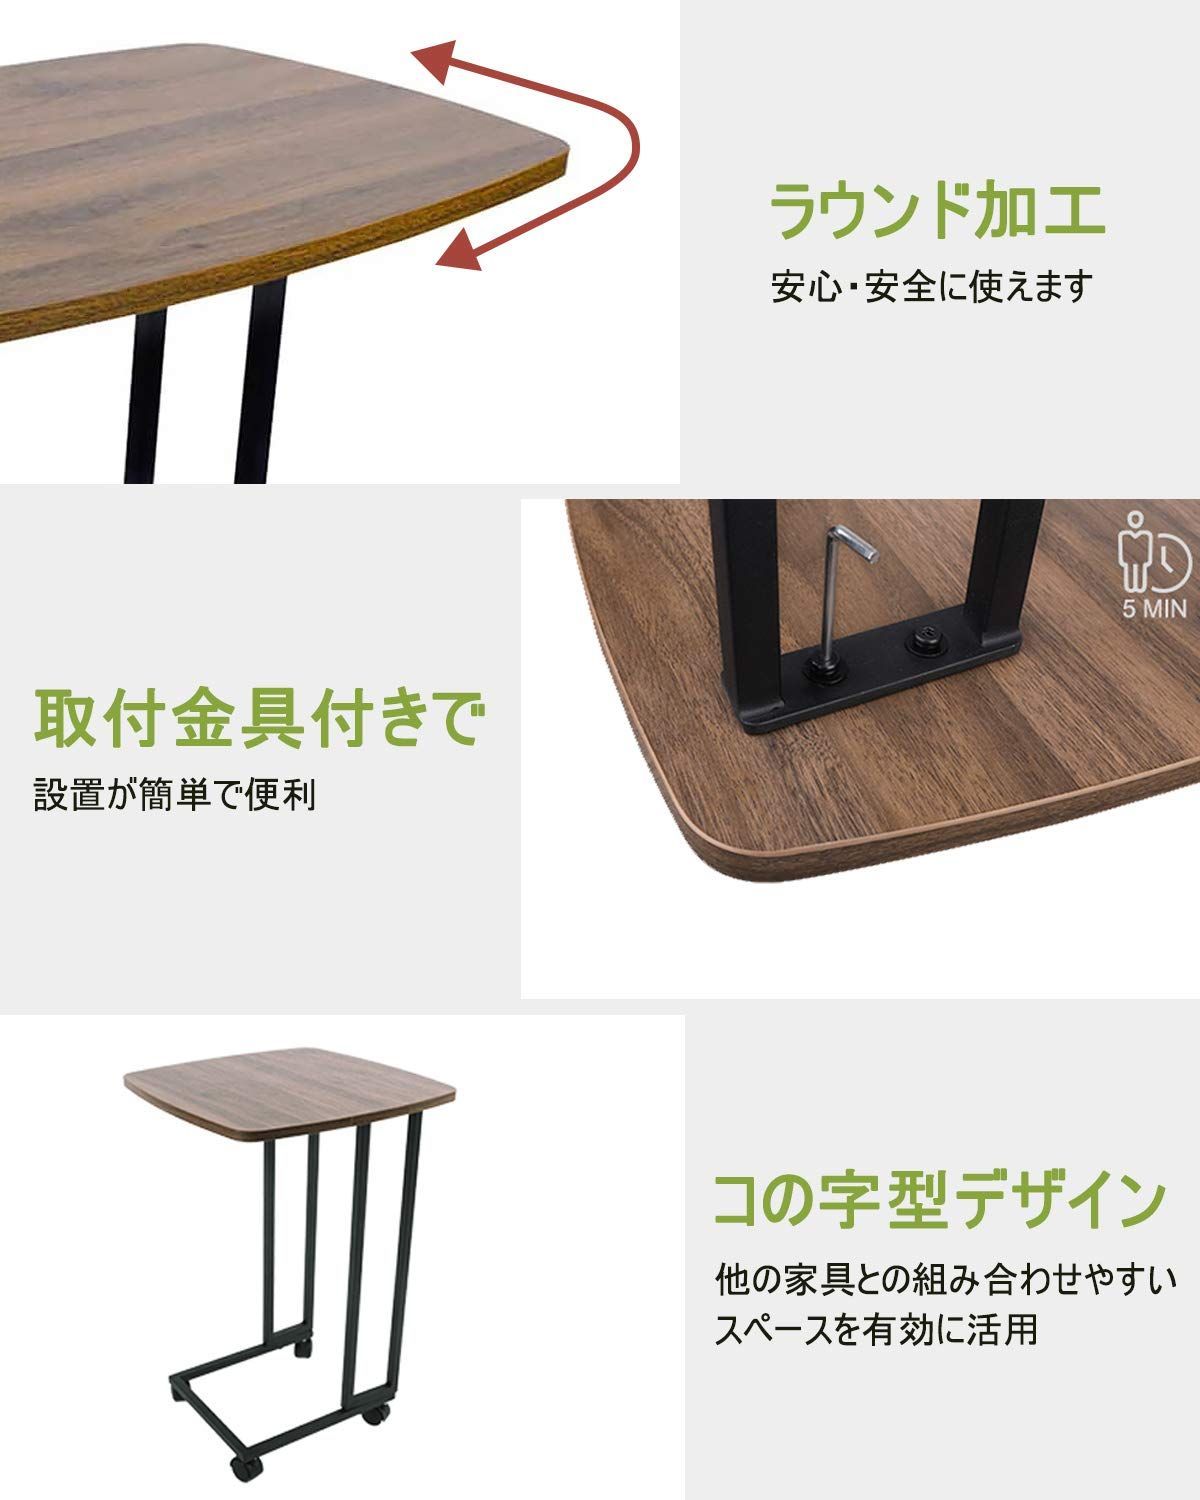 MONCOT サイドテーブル コの字型 ベッドサイド テーブル 物置テーブル